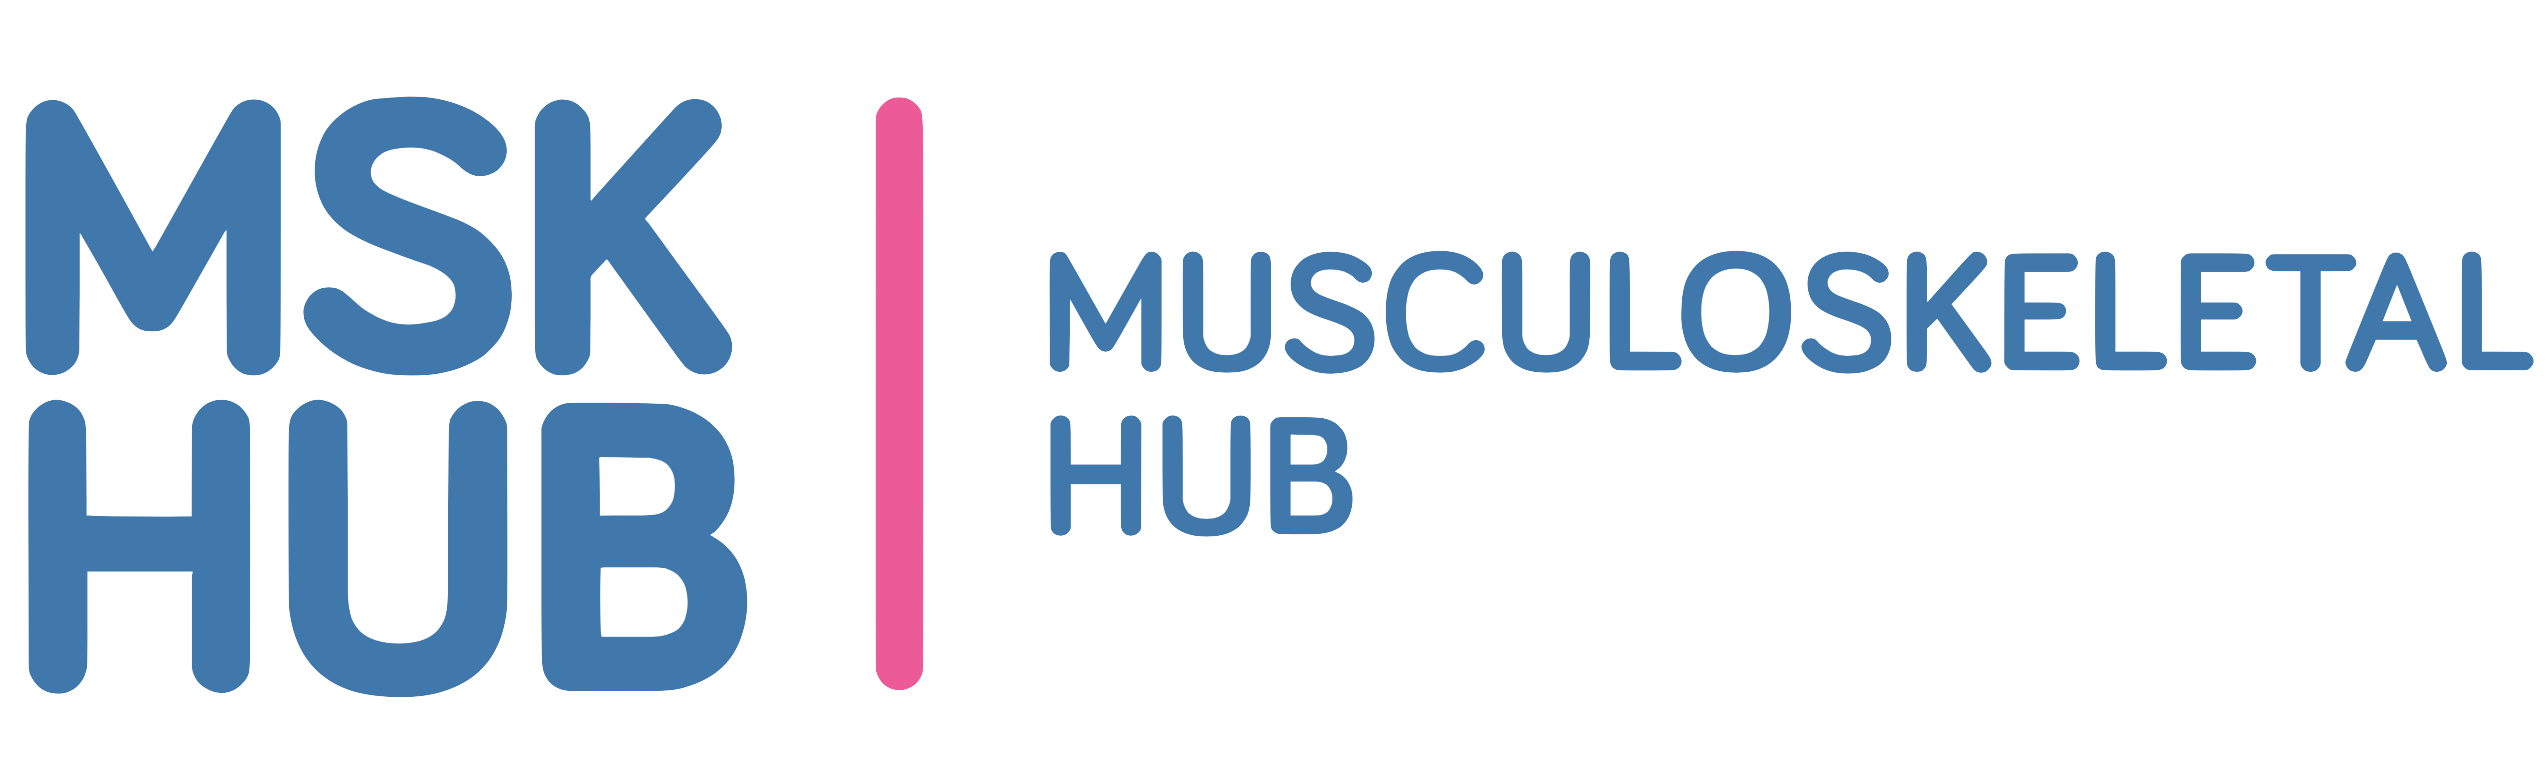 MSK Hub logo